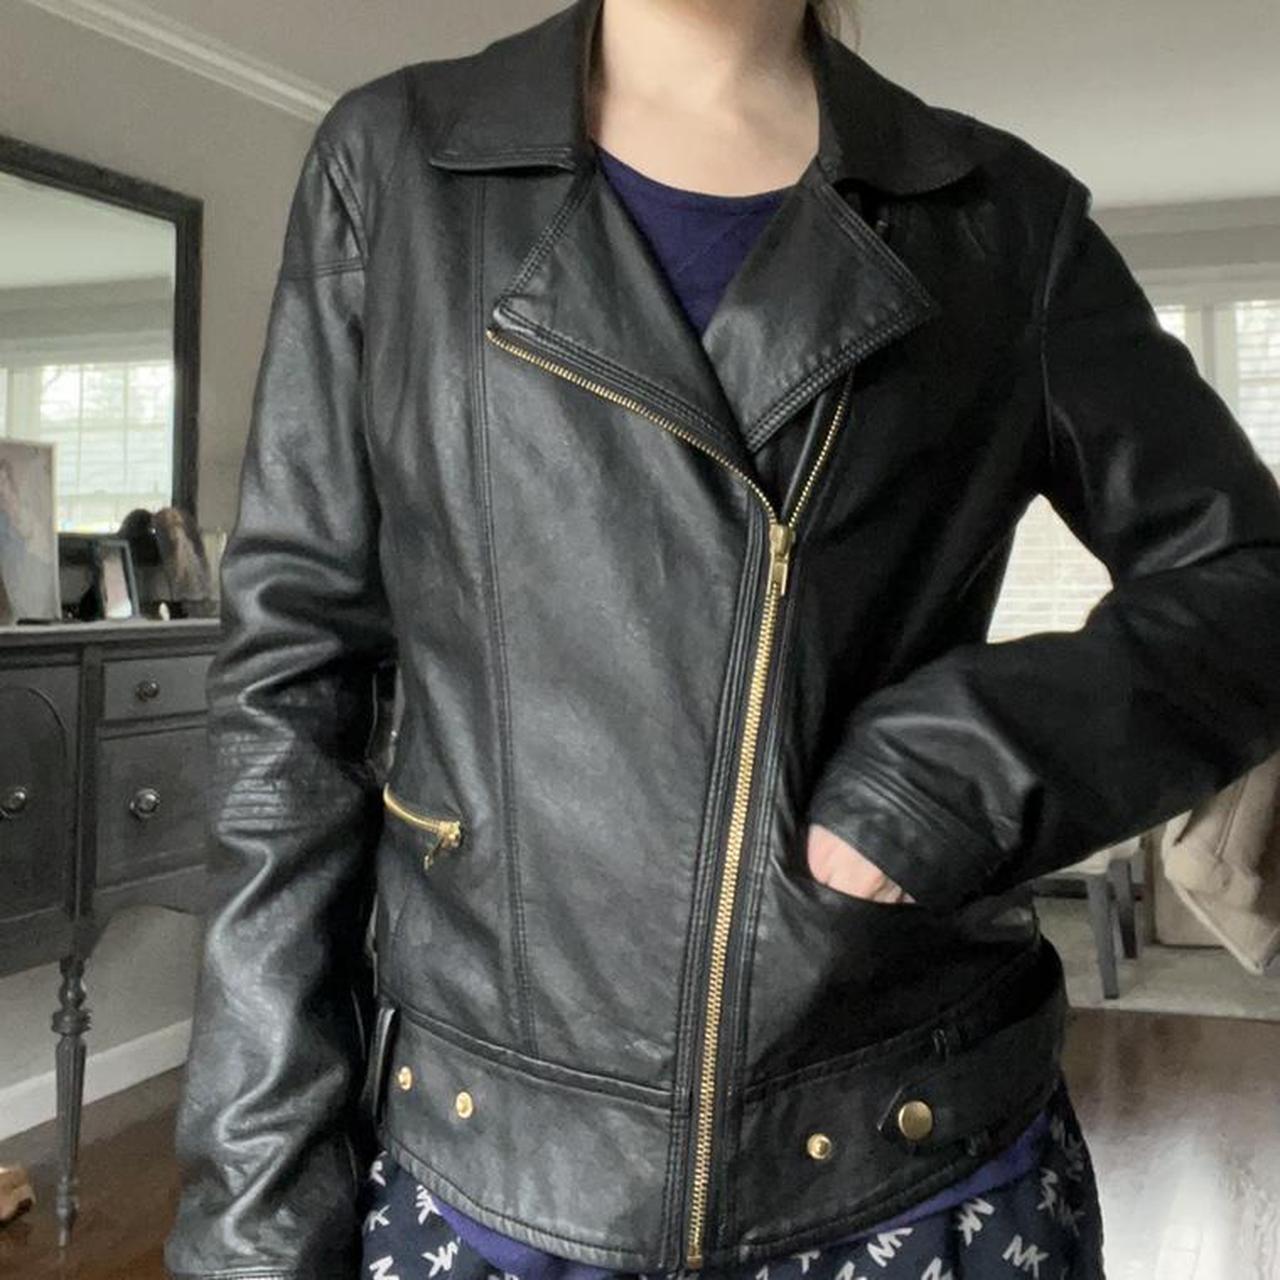 Product Image 3 - Adorable grunge leather jacket 
Similar